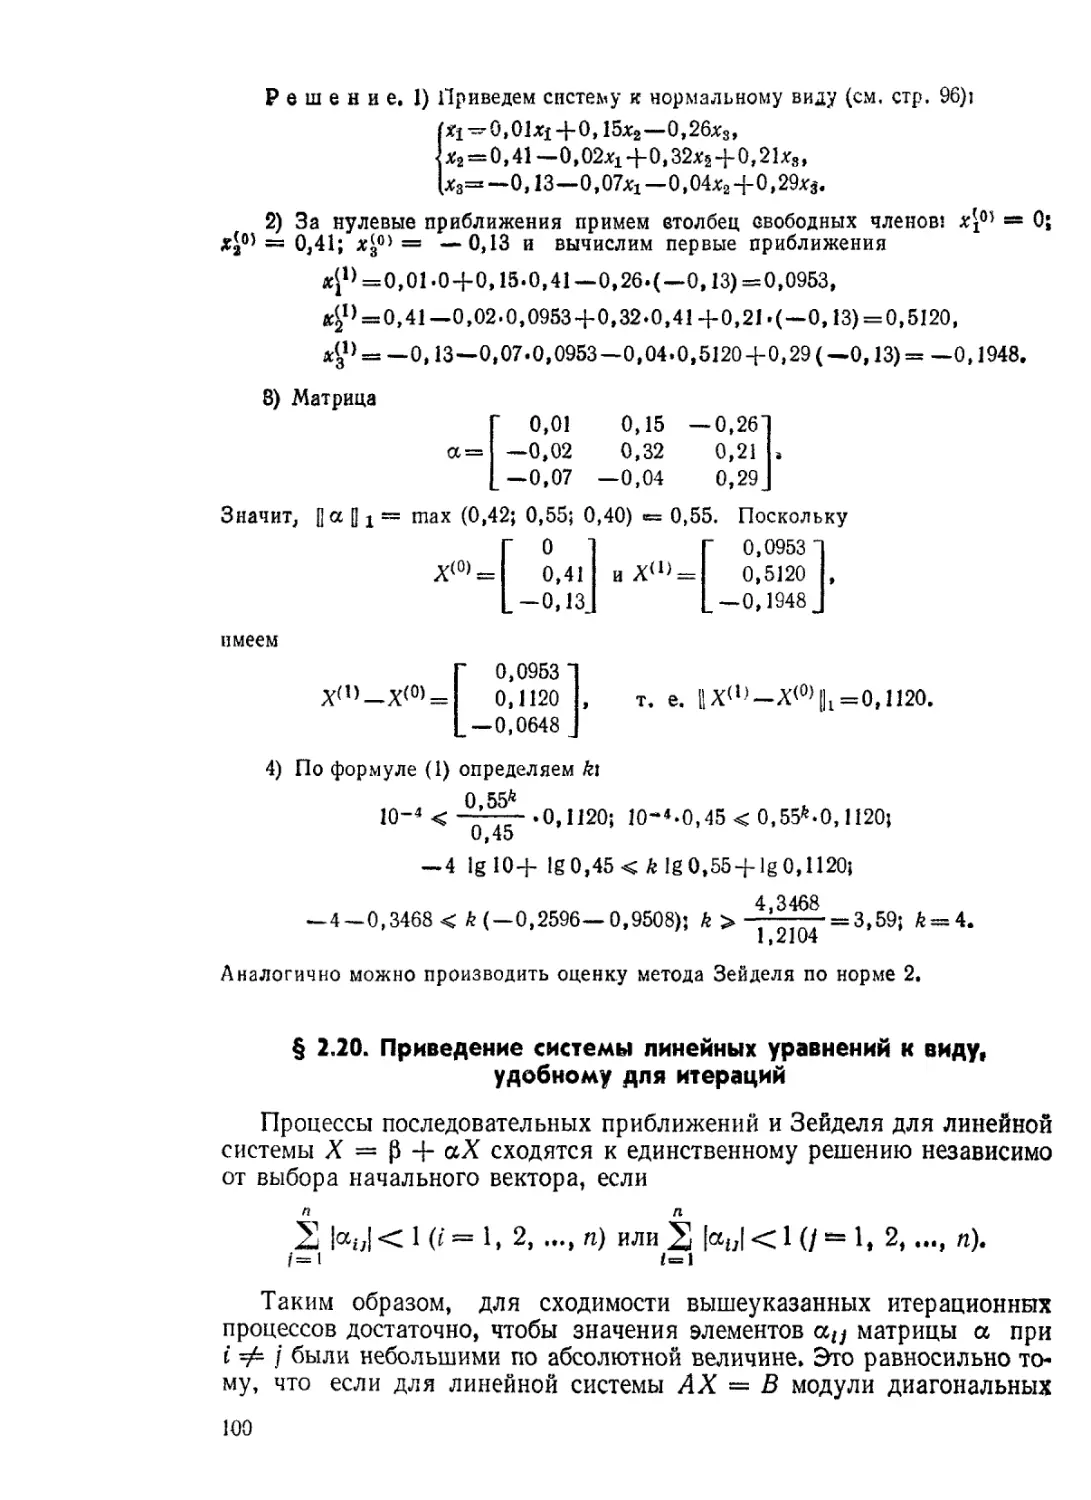 § 2.20. Приведение системы линейных уравнений к виду, удобному для итераций